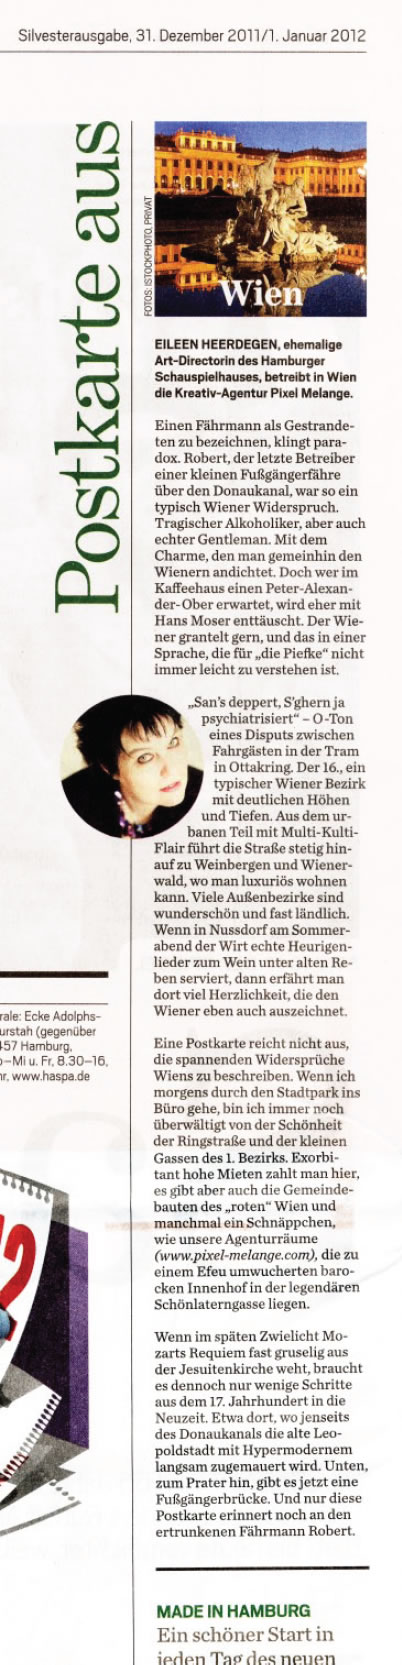 Zeitungsausschnitt aus der Silvesterausgabe des Hamburger Abendblatts, Artikel von Eileen Heerdegen über ihr Wien